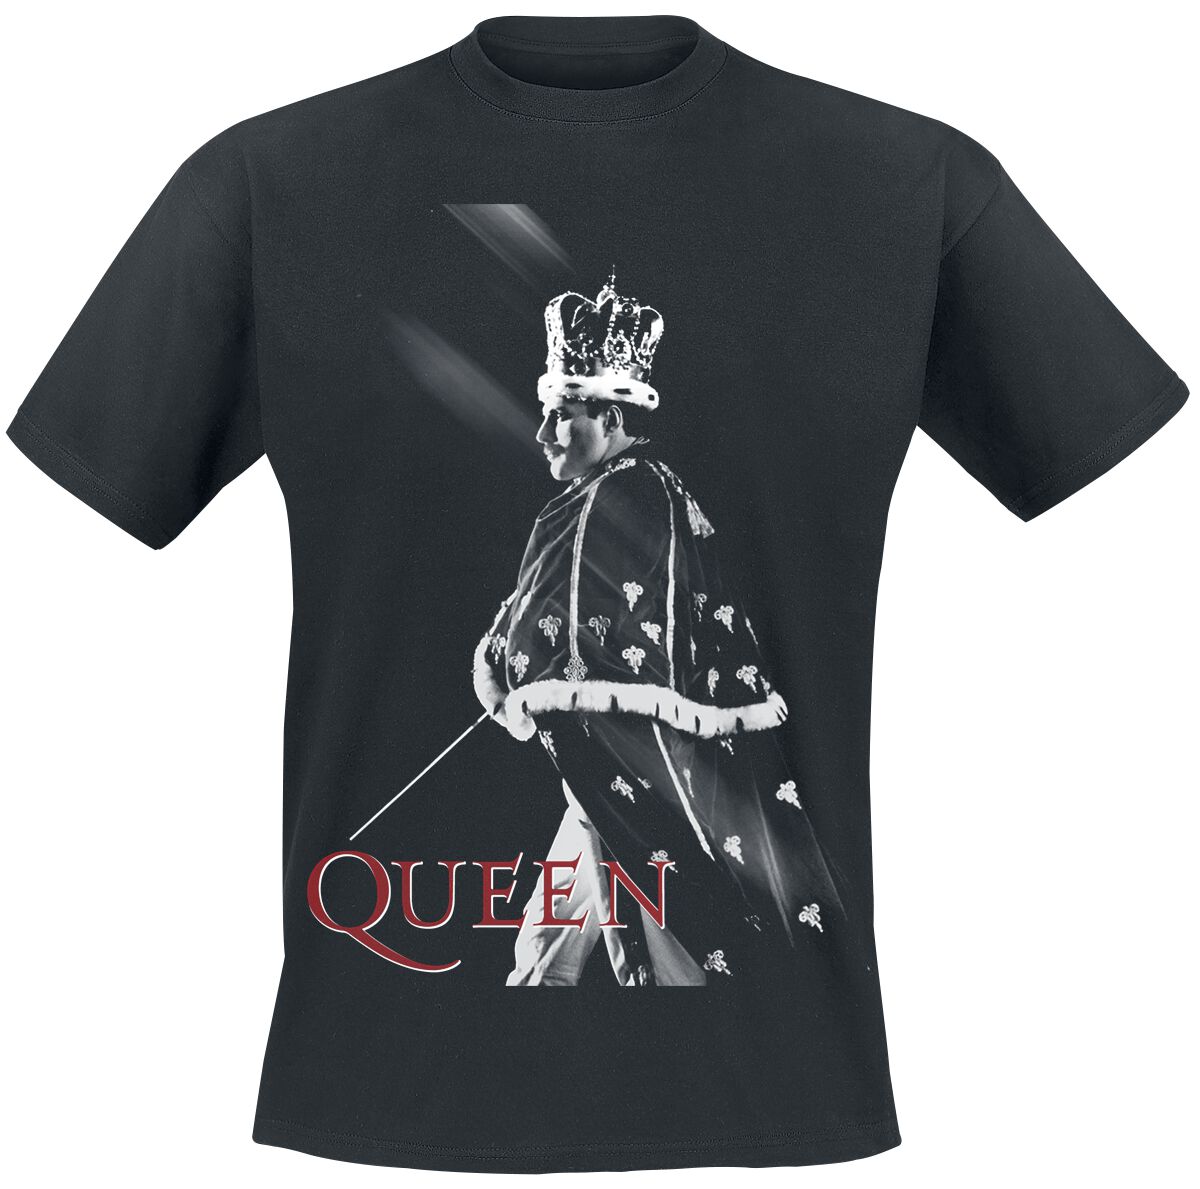 Queen T-Shirt - Streaks Of Light - L bis XXL - für Männer - Größe XL - schwarz  - Lizenziertes Merchandise!